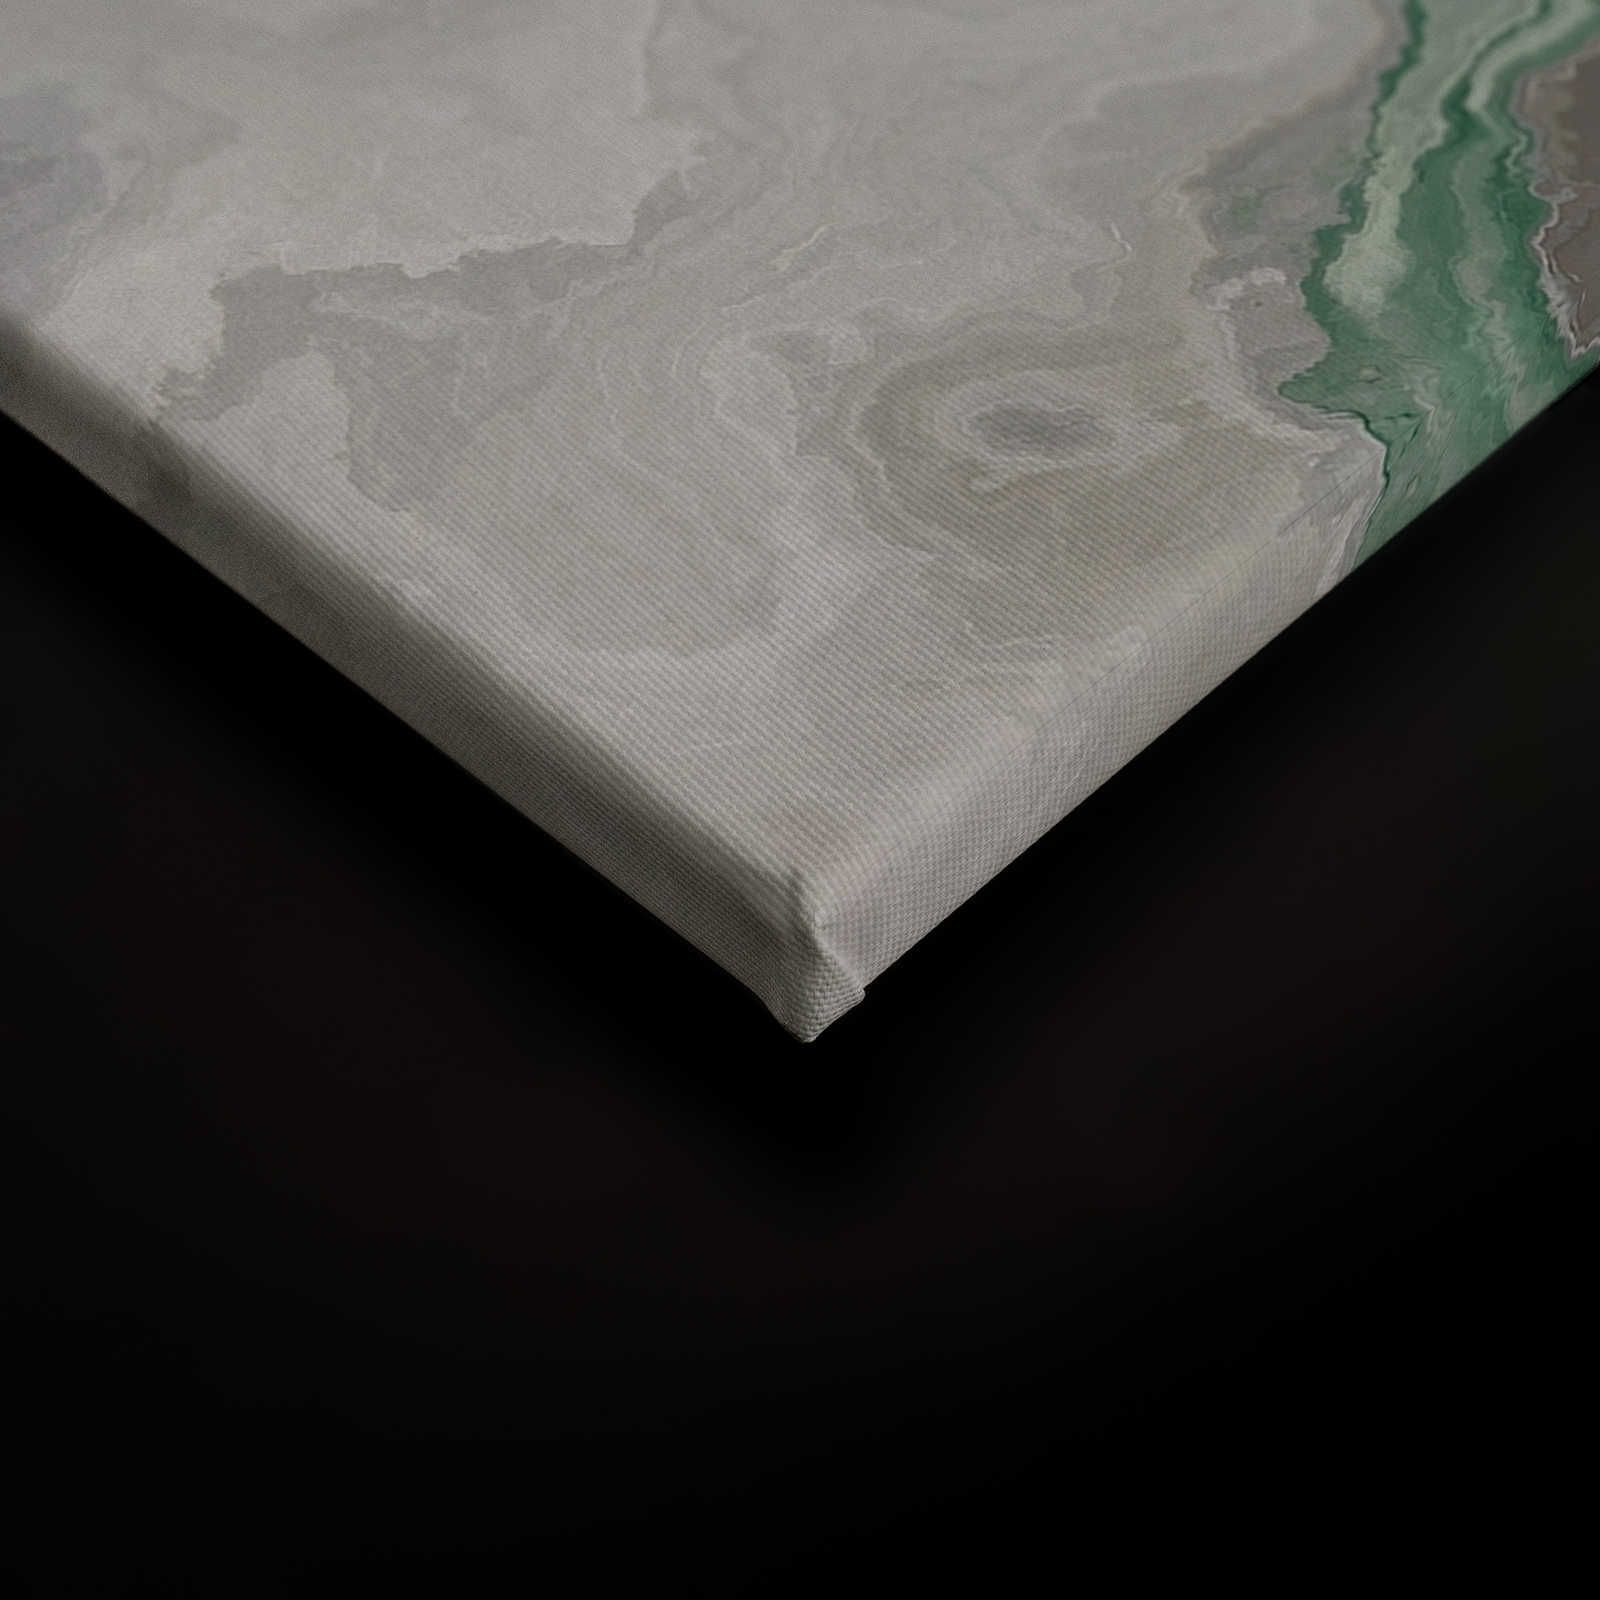             Quadro su tela al quarzo con marmorizzazione - 1,20 m x 0,80 m
        